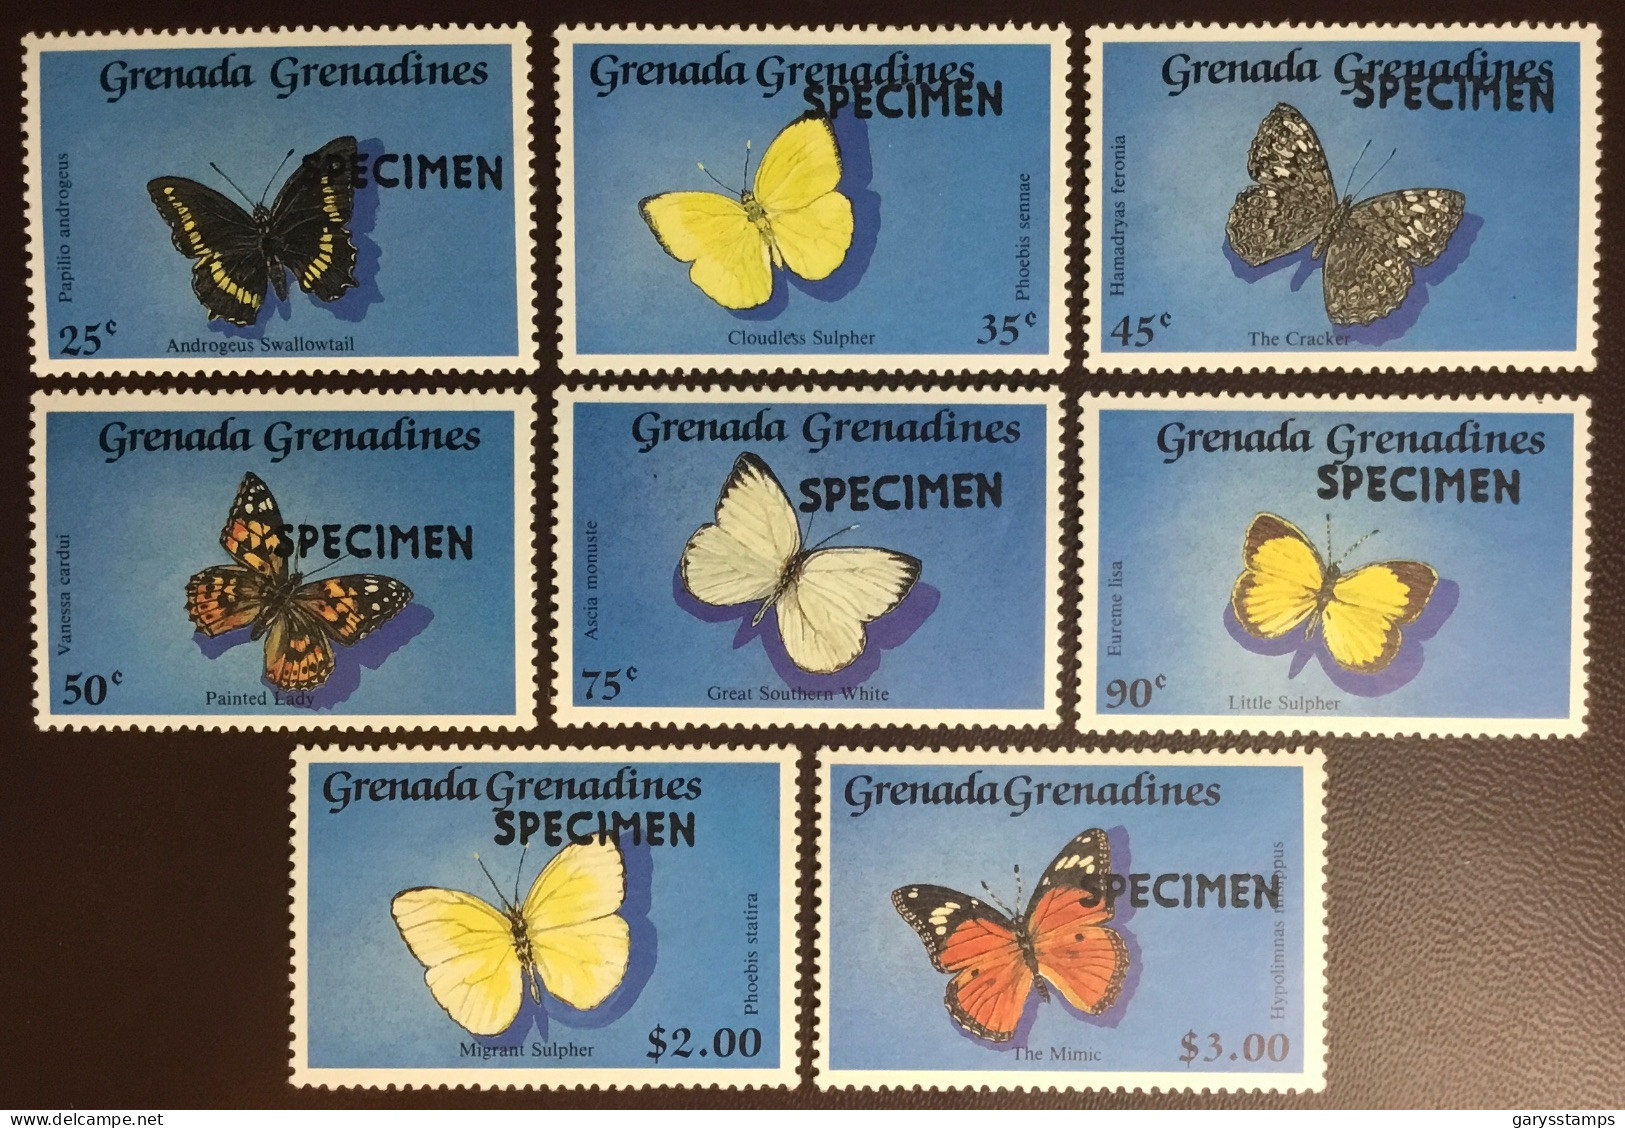 Grenada Grenadines 1989 Butterflies Specimen MNH - Butterflies